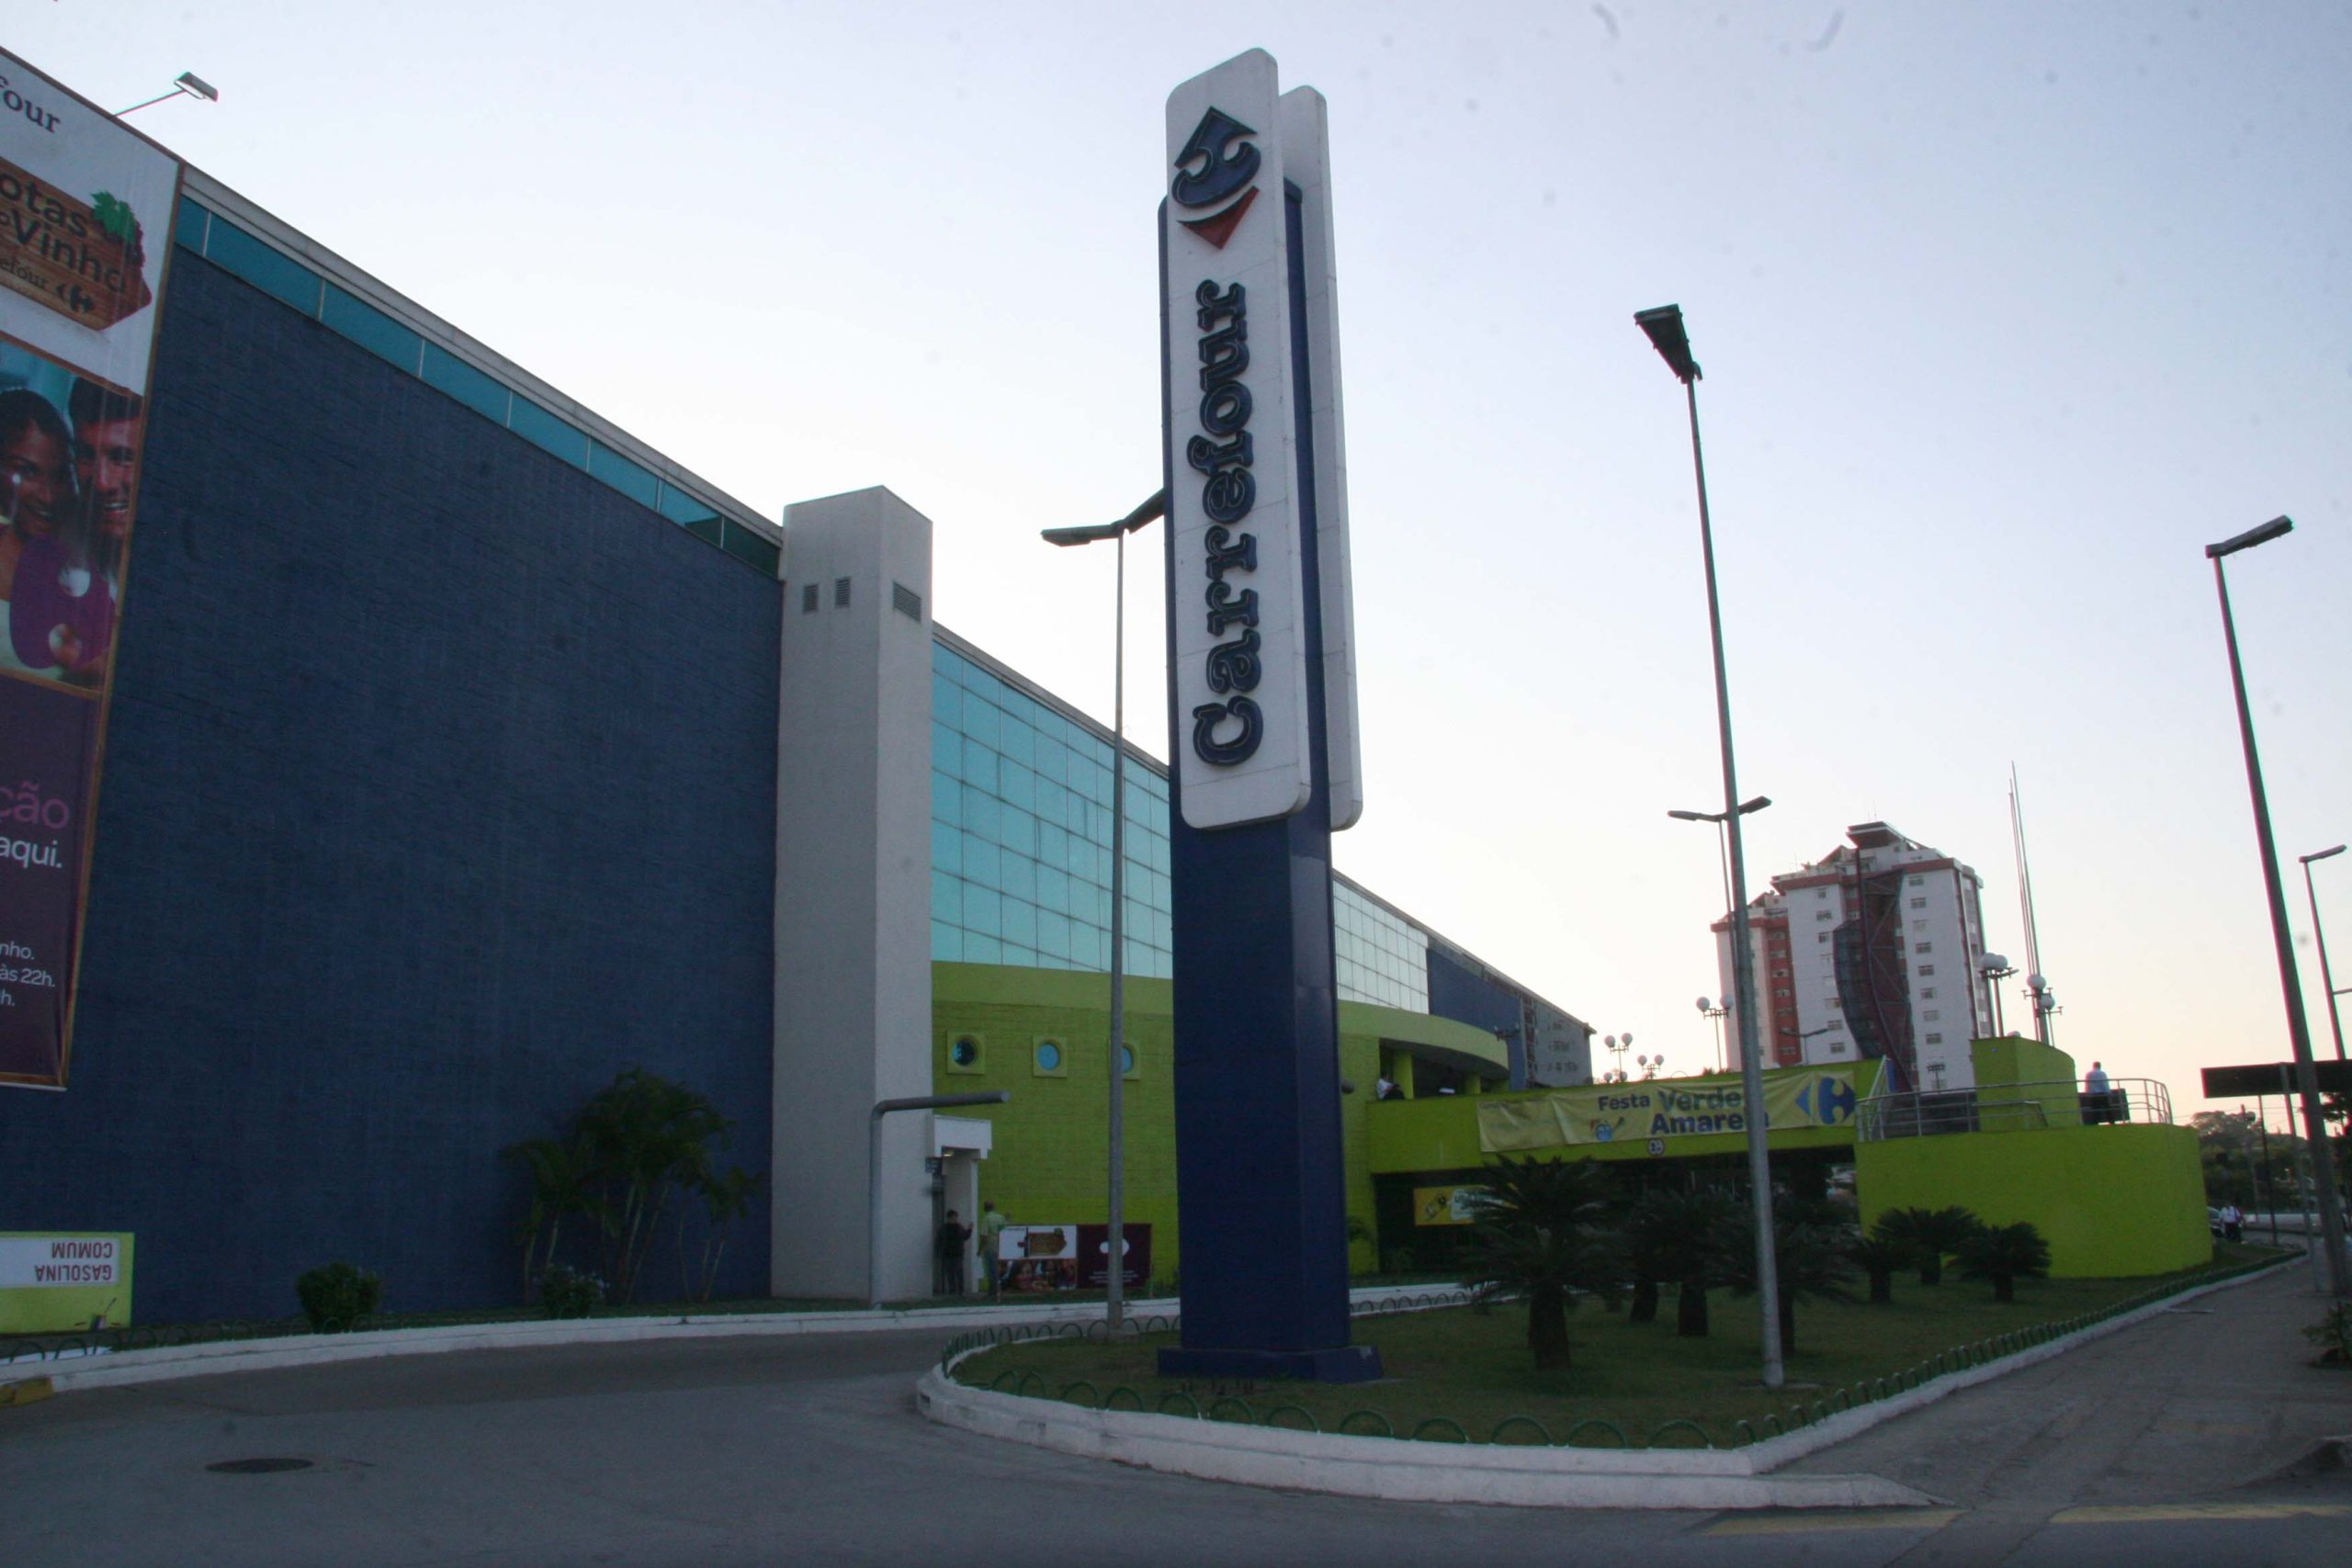 Carrefour conclui conversão de lojas do Big, ex-Walmart Brasil